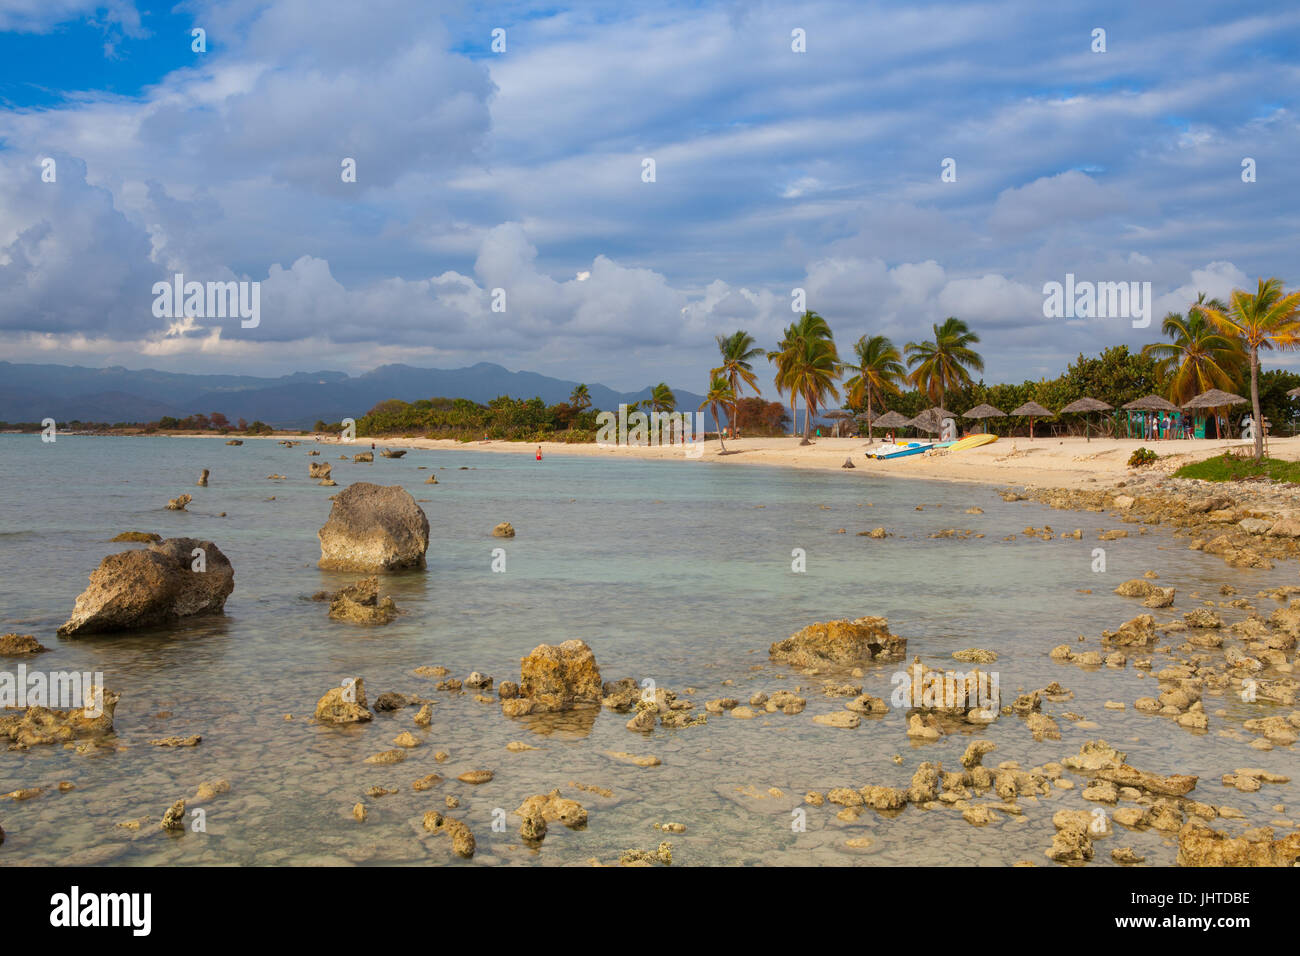 Spielen Giron, Kuba - Januar 30,2017: am Strand Playa Giron, Kuba. Dieser Strand ist berühmt für seine Rolle während der Schweinebucht-Invasion. Stockfoto